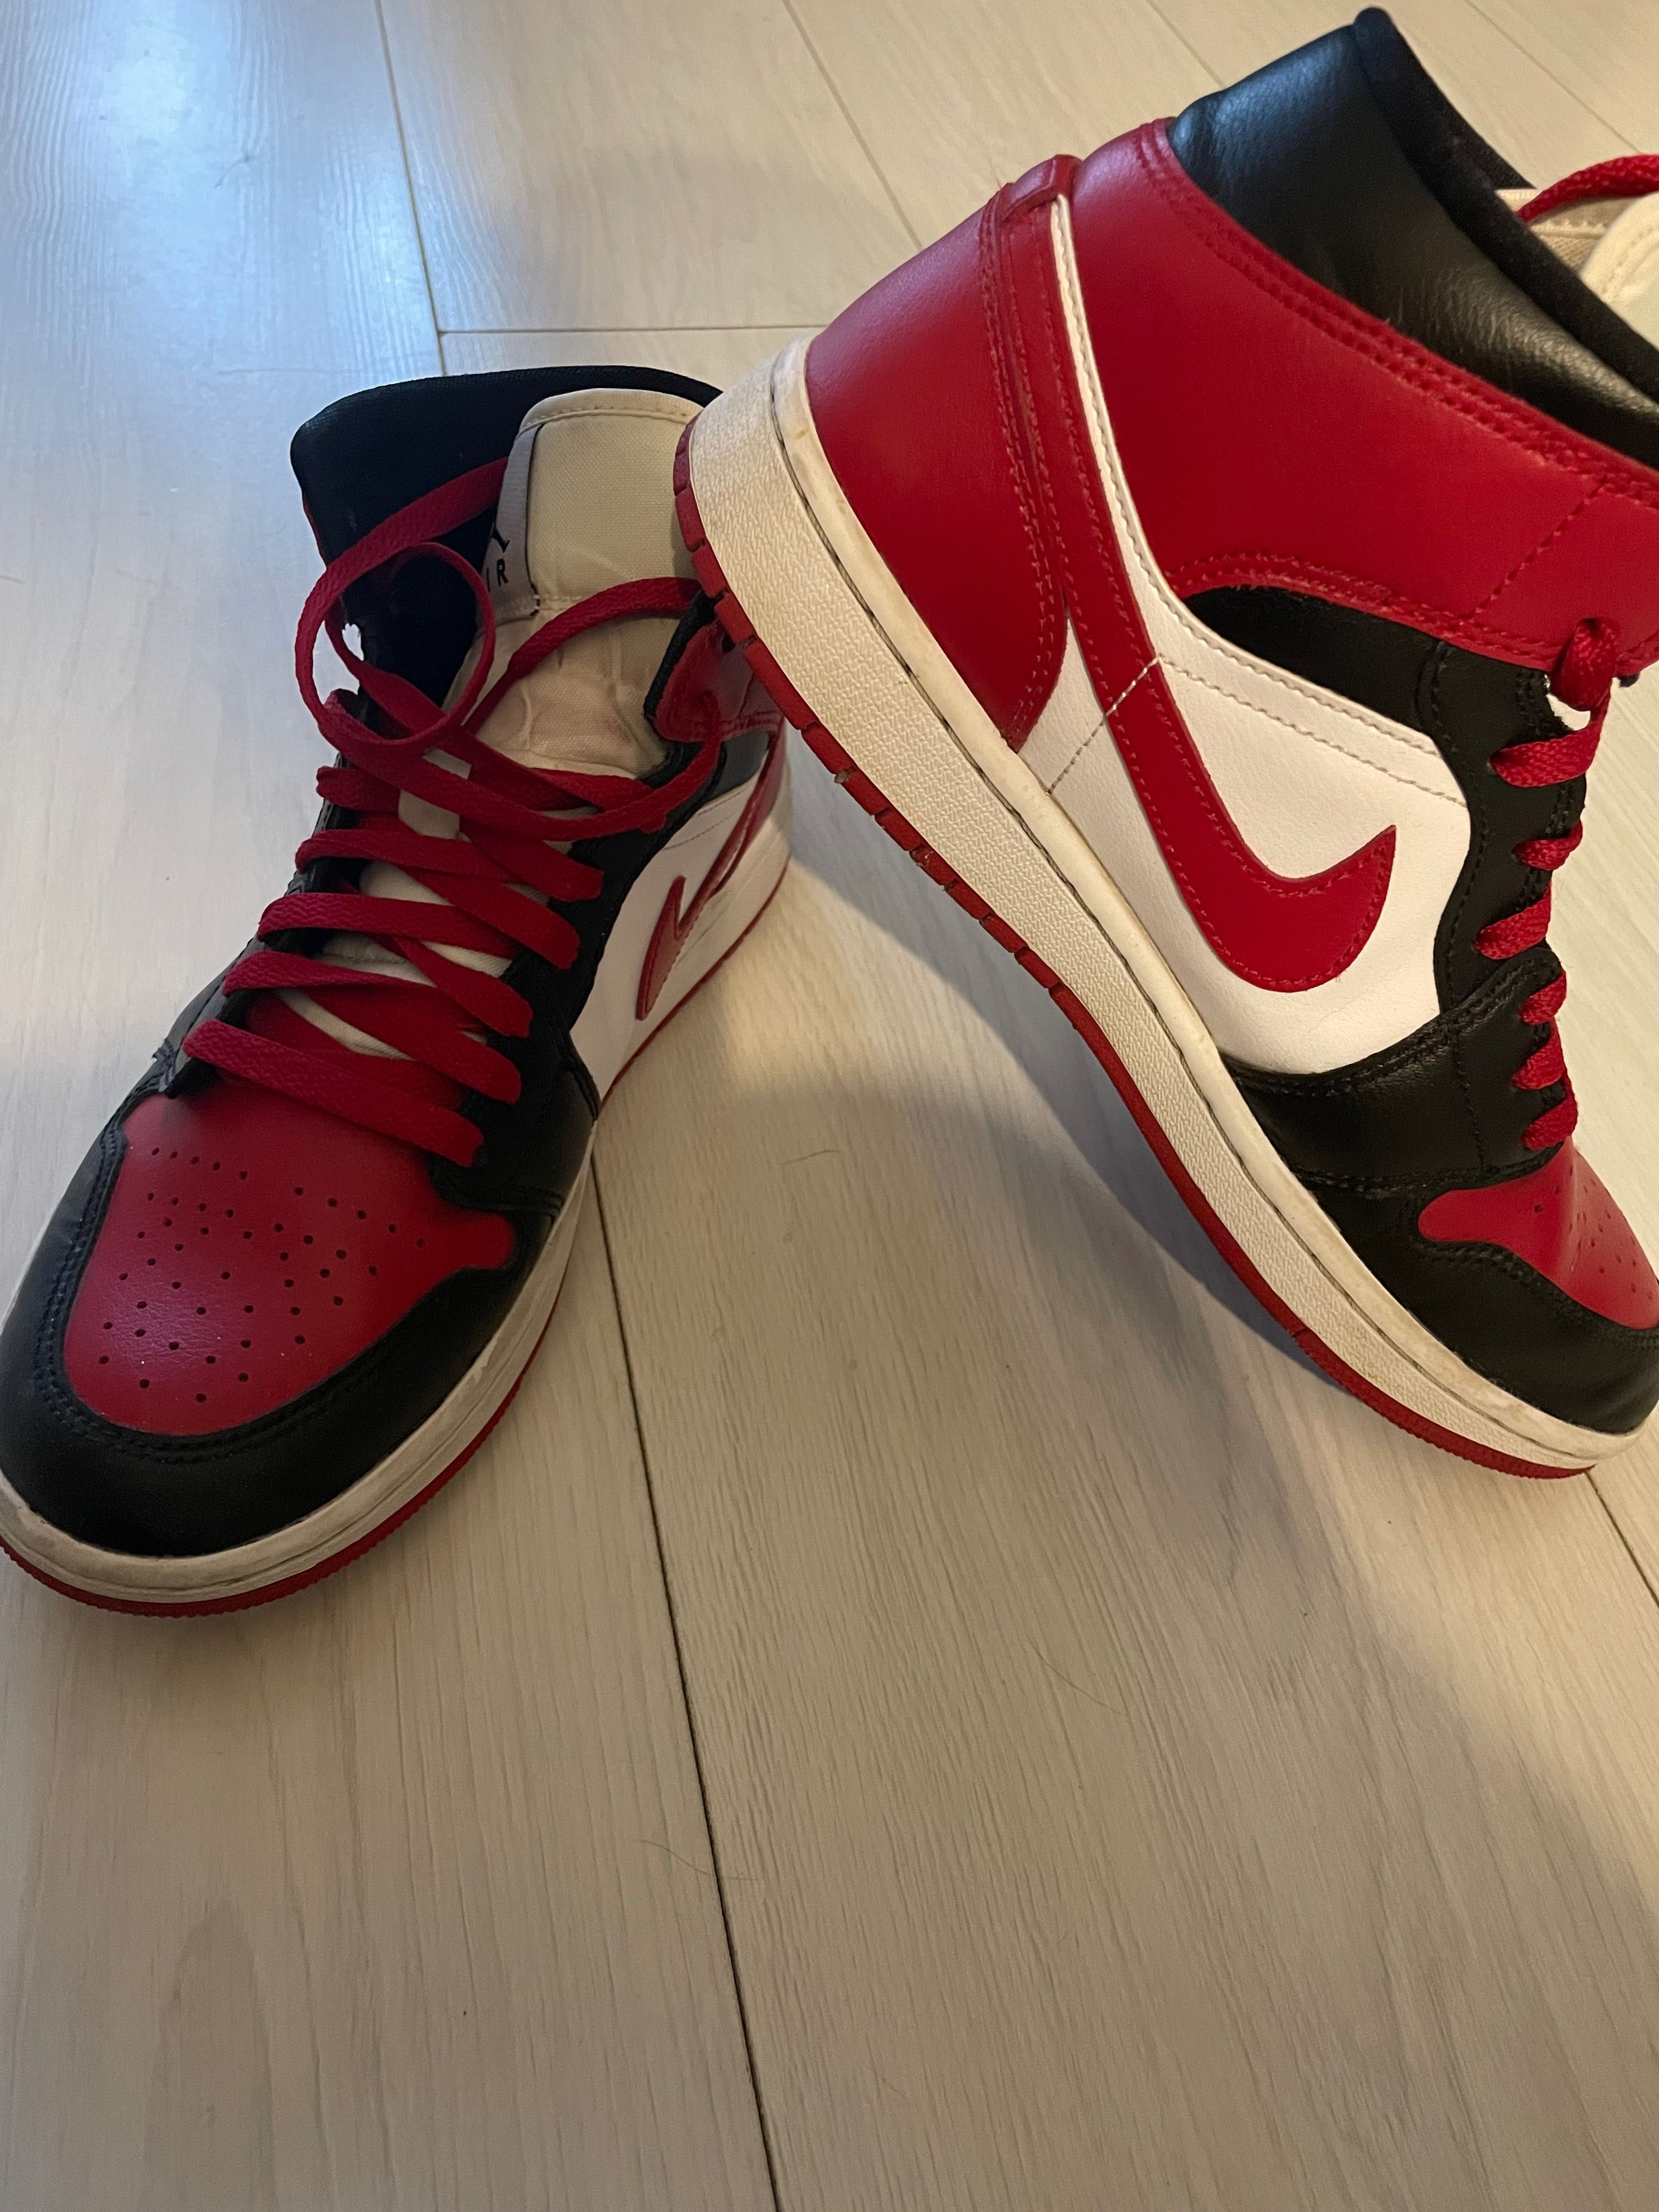 Buty Nike Jordan w bardzo dobrym stanie